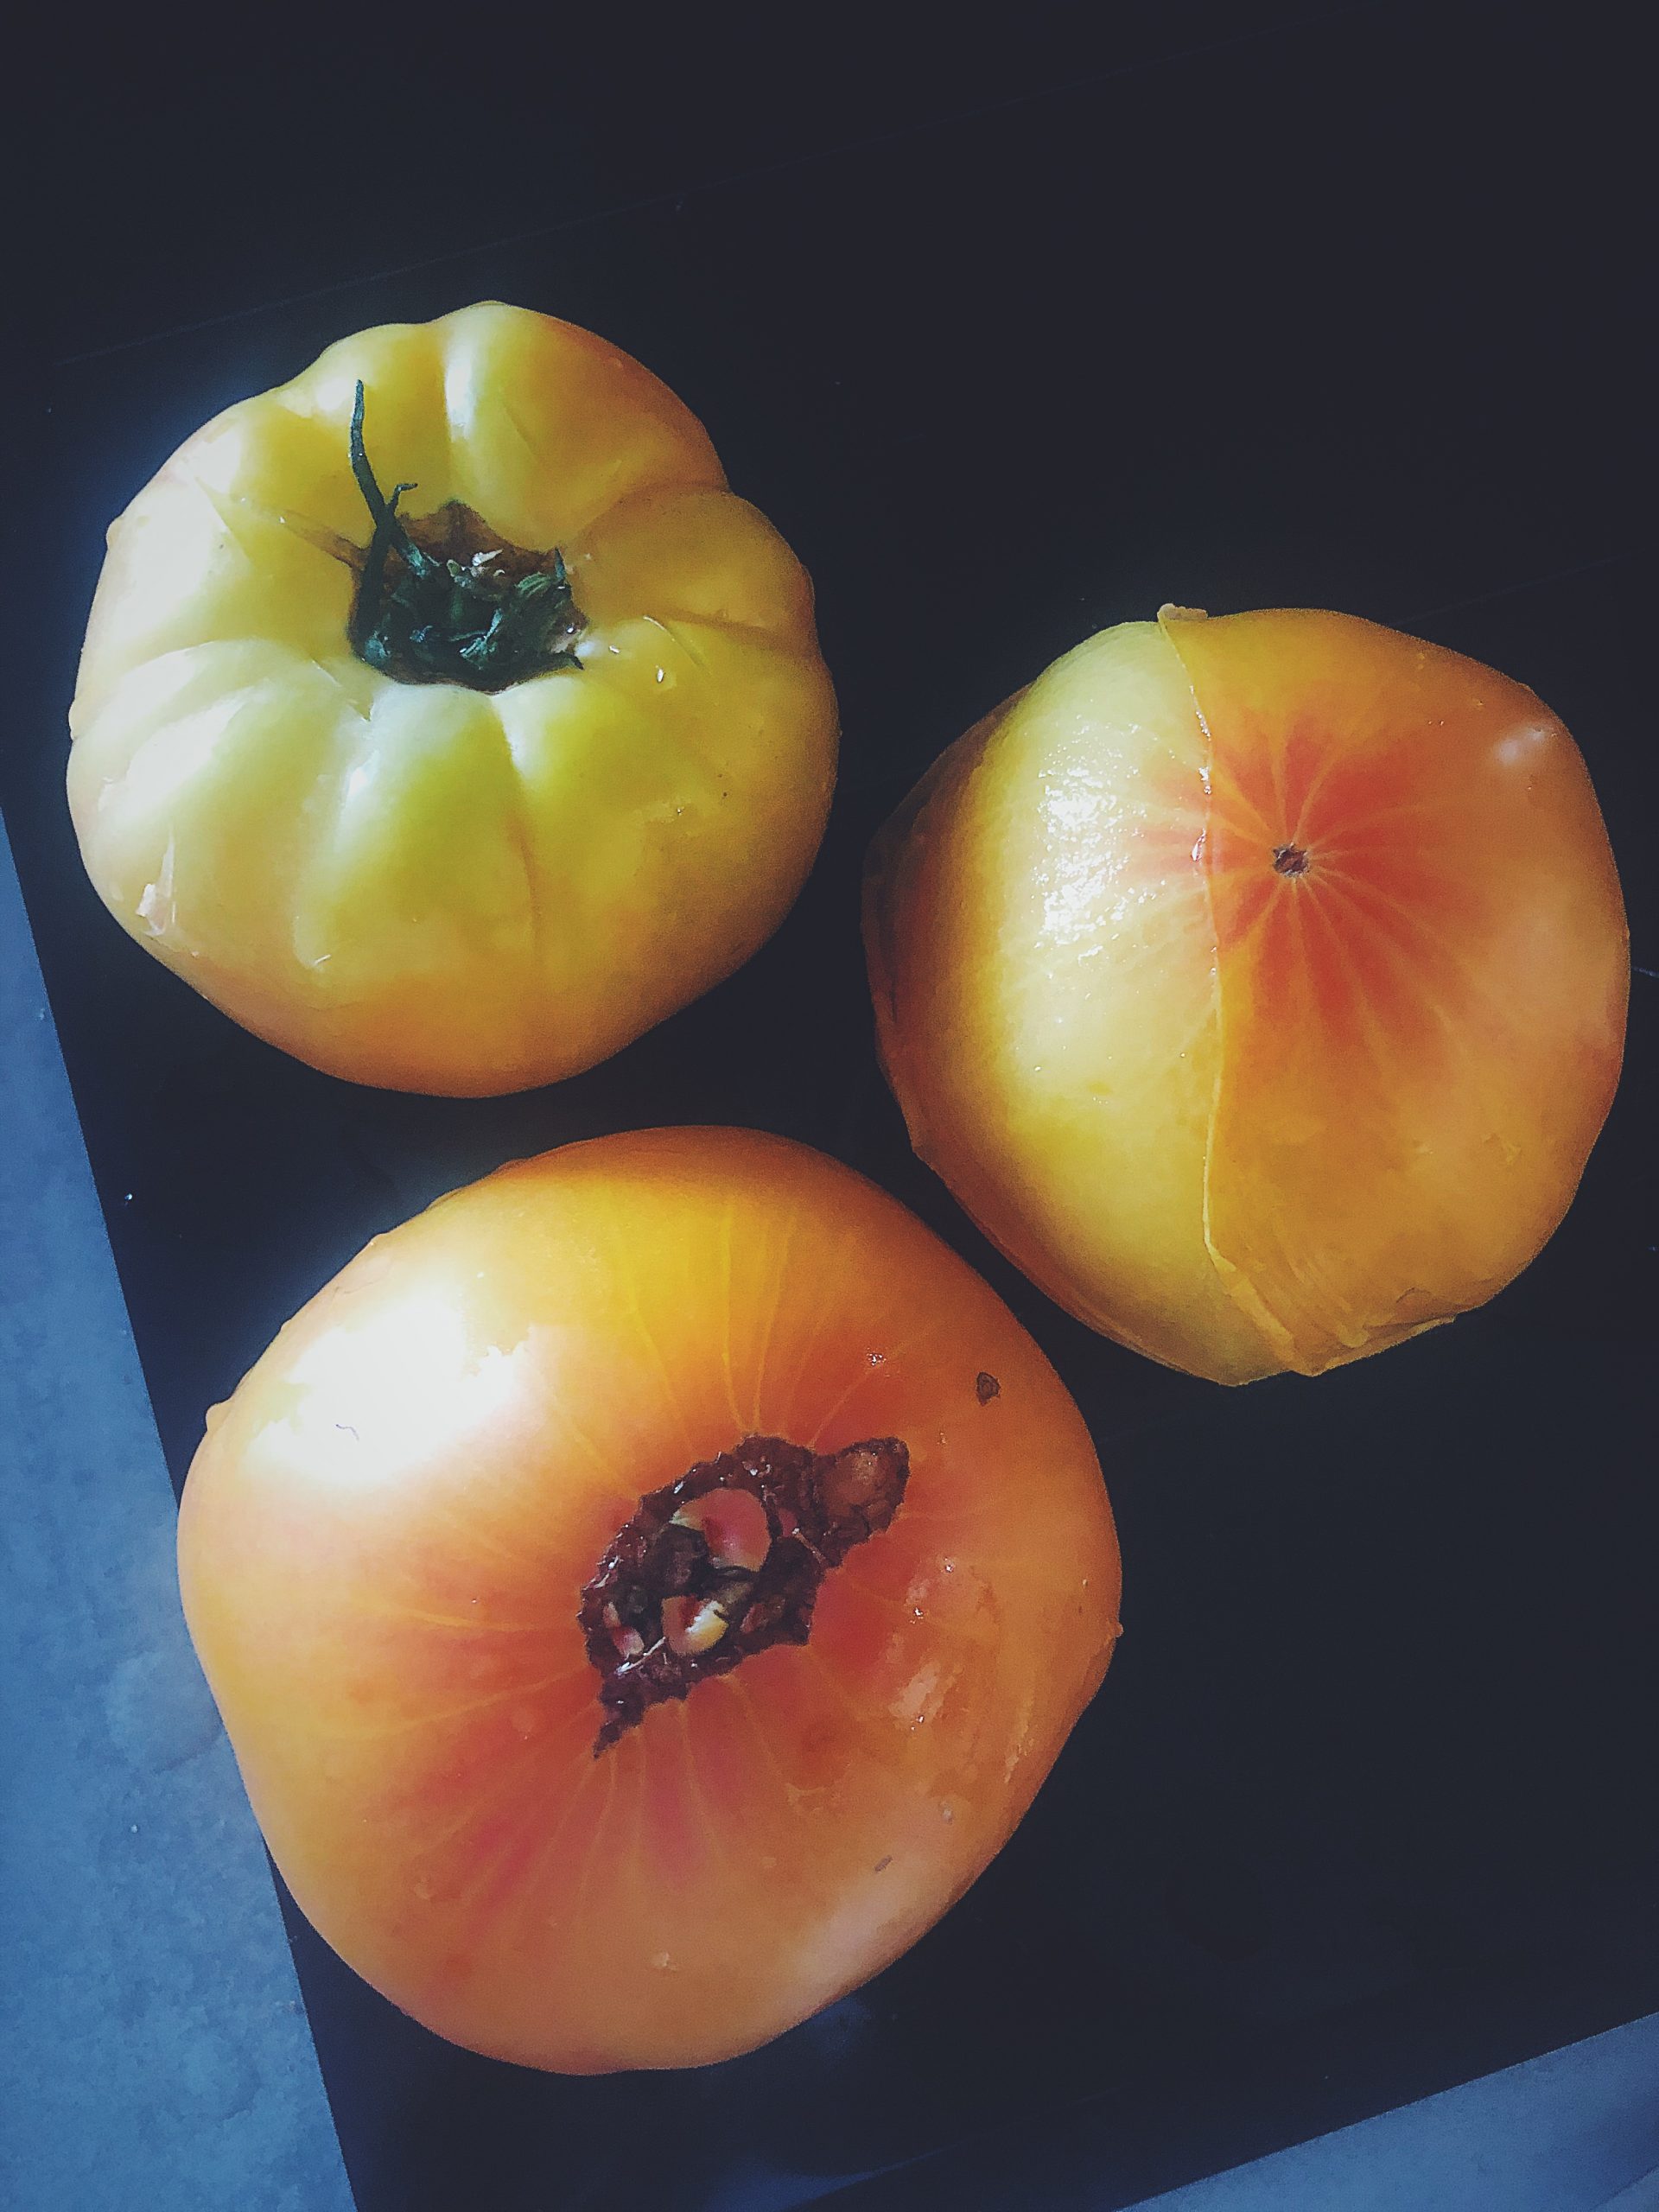 Jak obrać pomidora ze skórki - pomidor po wyjęciu z wrzątku